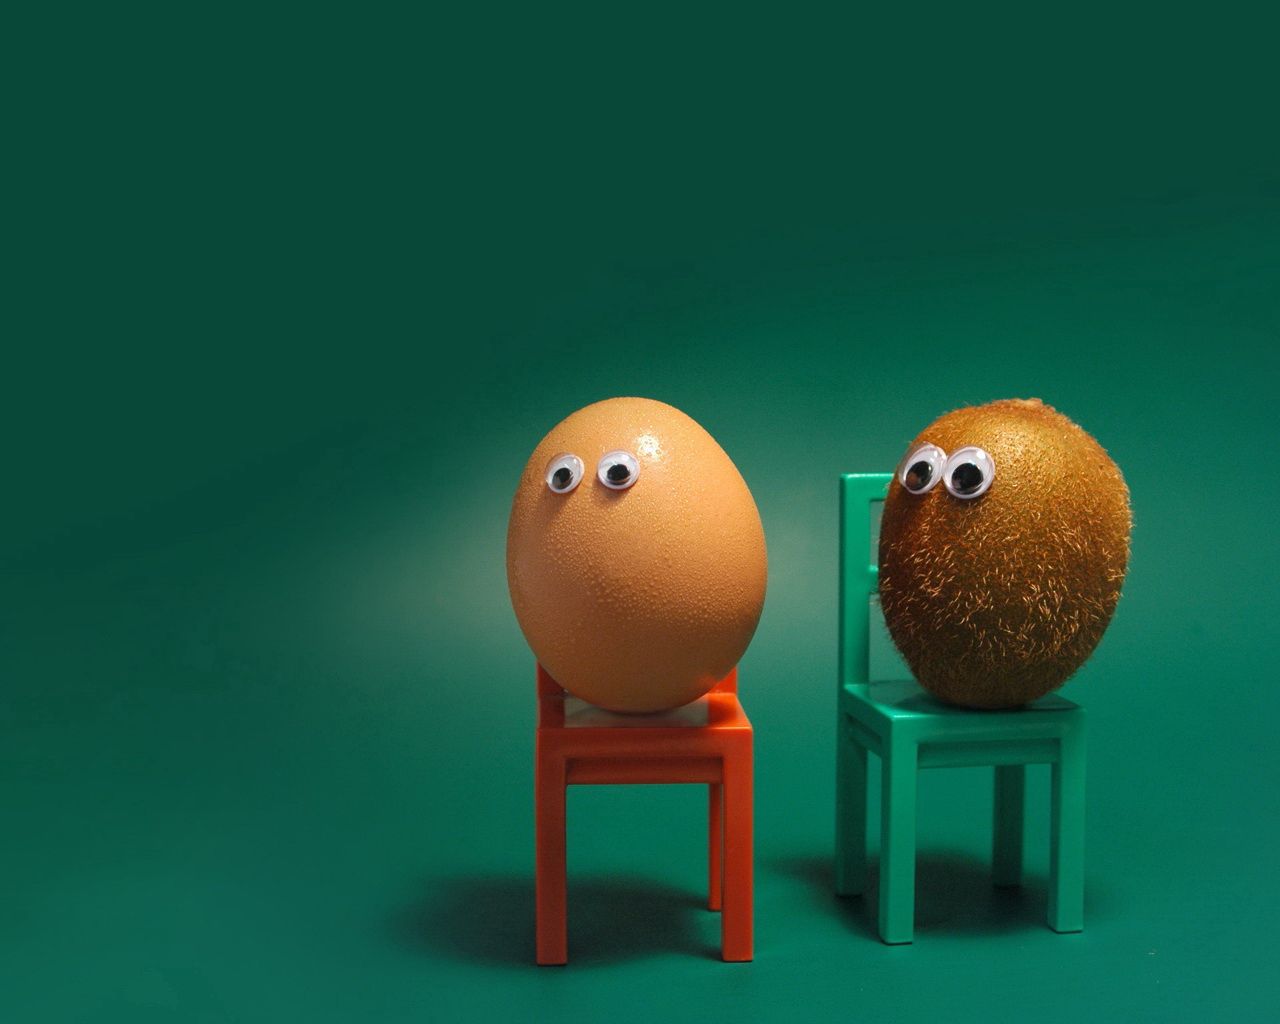 egg, miscellaneous, funny, kiwi, miscellanea, eyes, chairs, situation